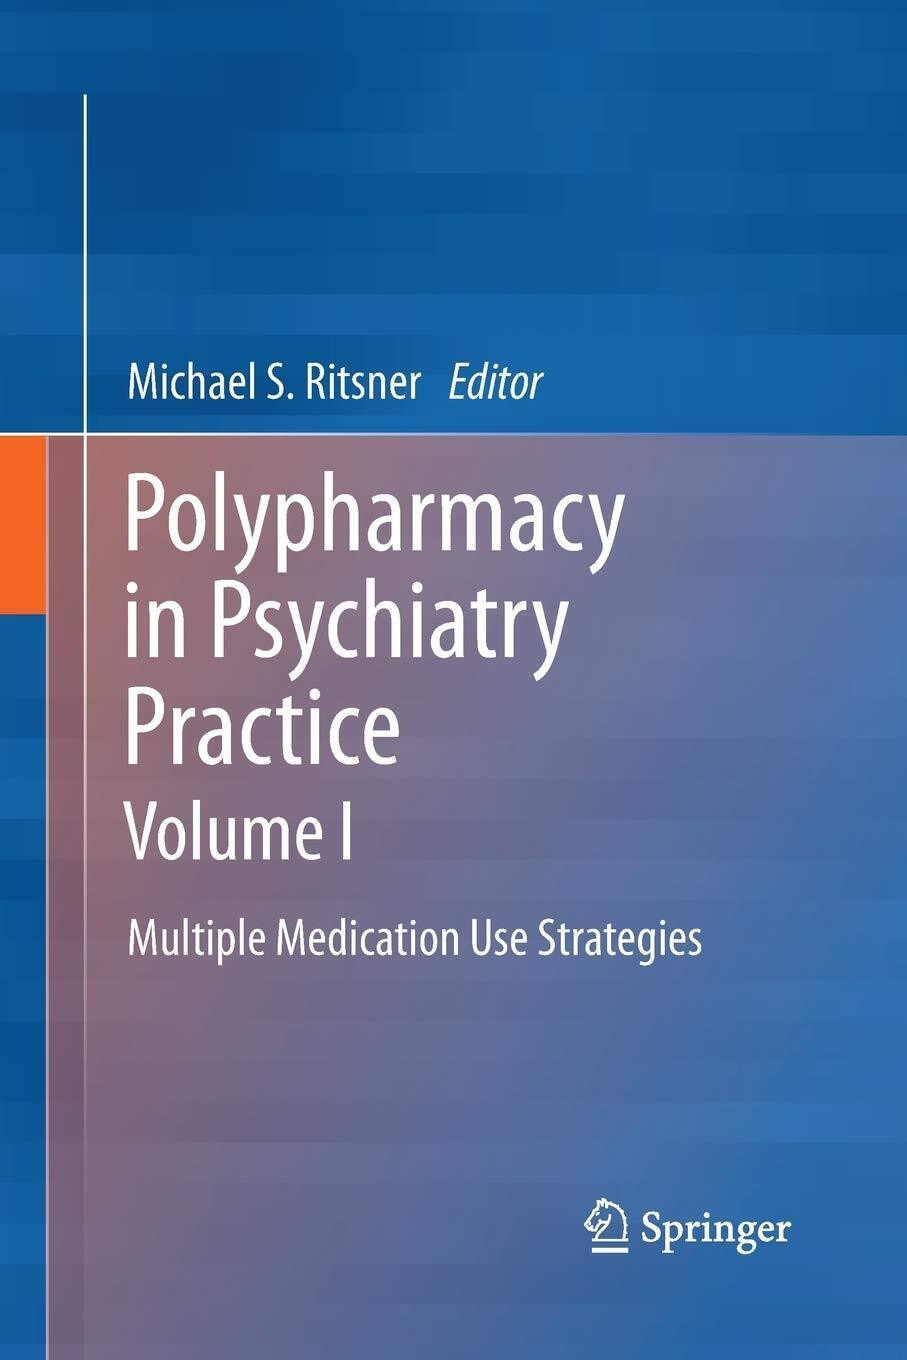 Polypharmacy in Psychiatry Practice, Volume I - Michael S Ritsner -Springer,2015